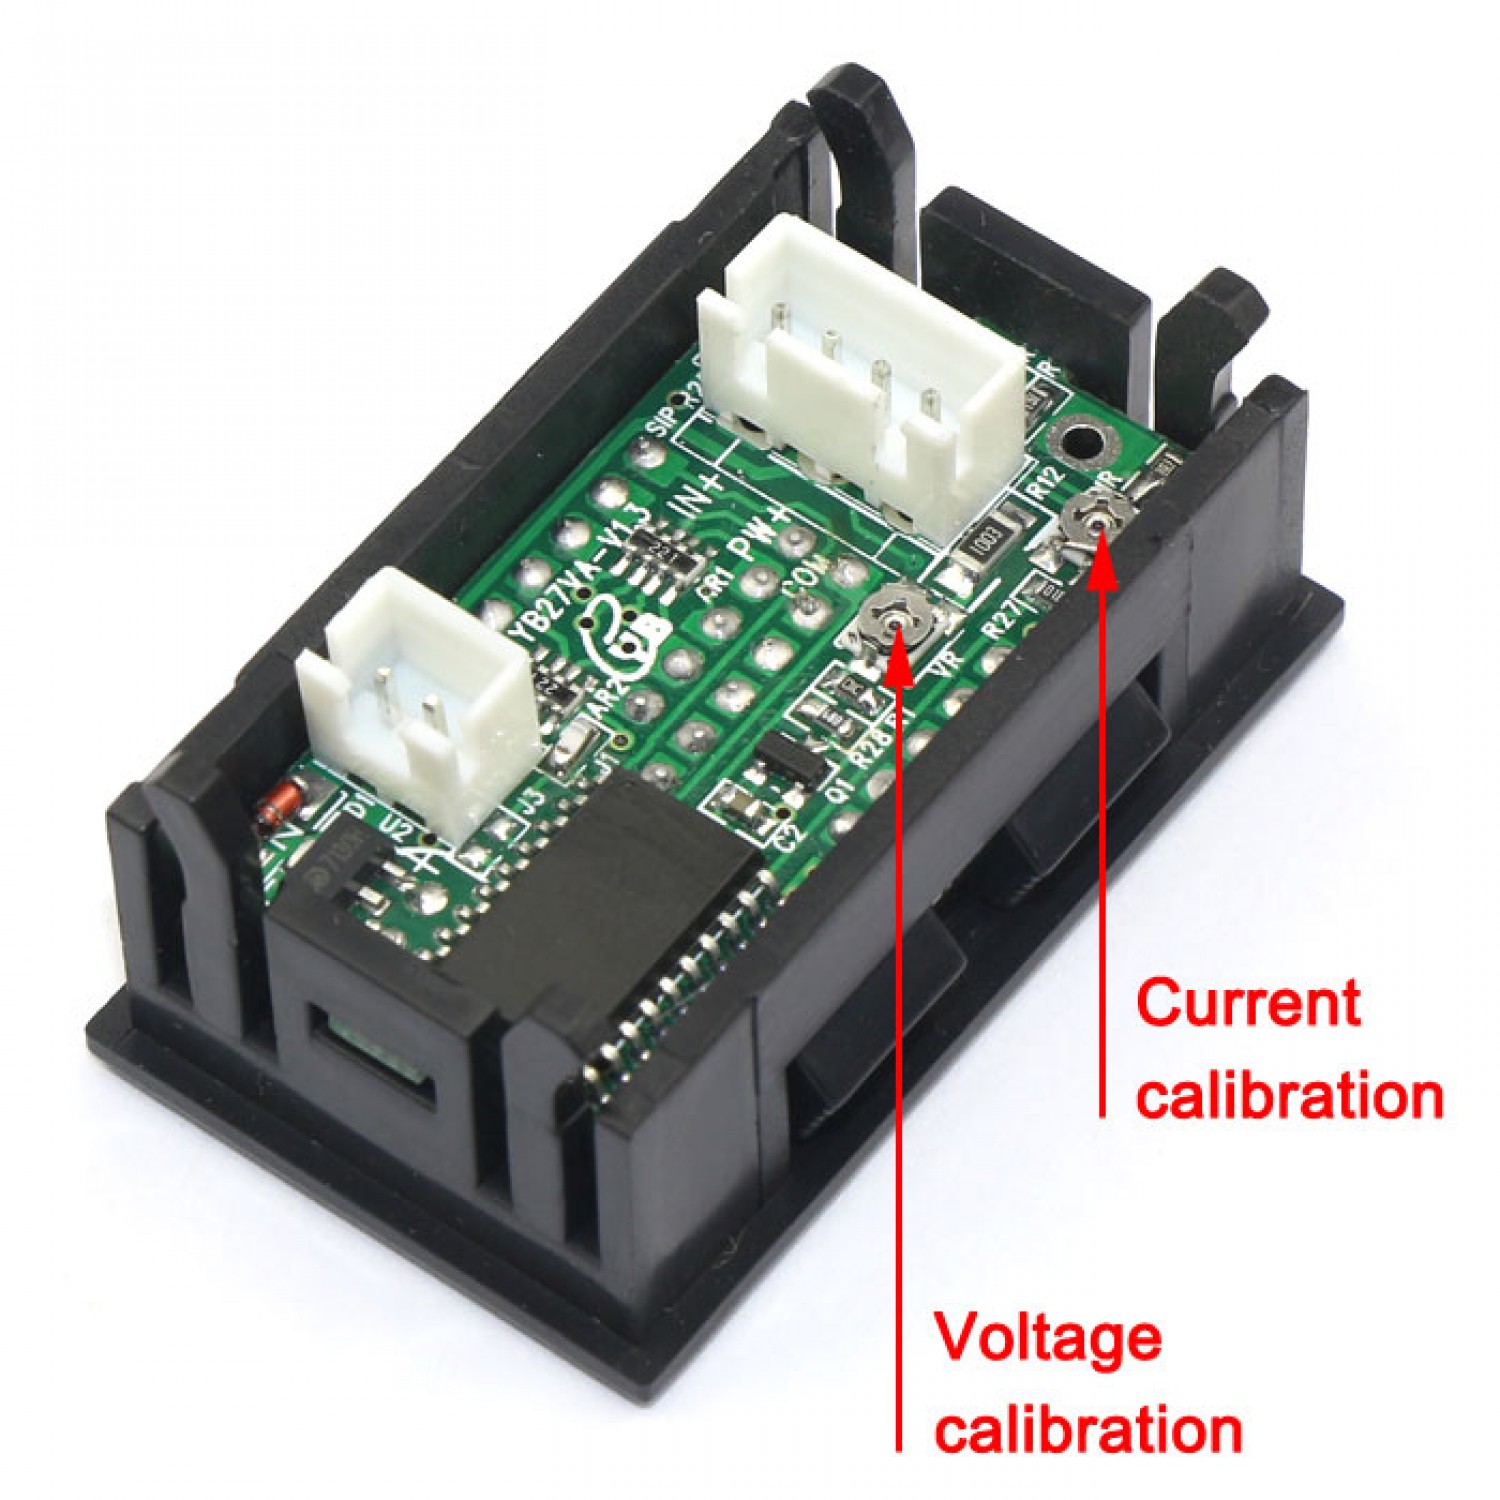 DC 0-500V 100A Digital LED Voltmeter Ammeter Amp Volt tester Meter shunt 12v 24v 